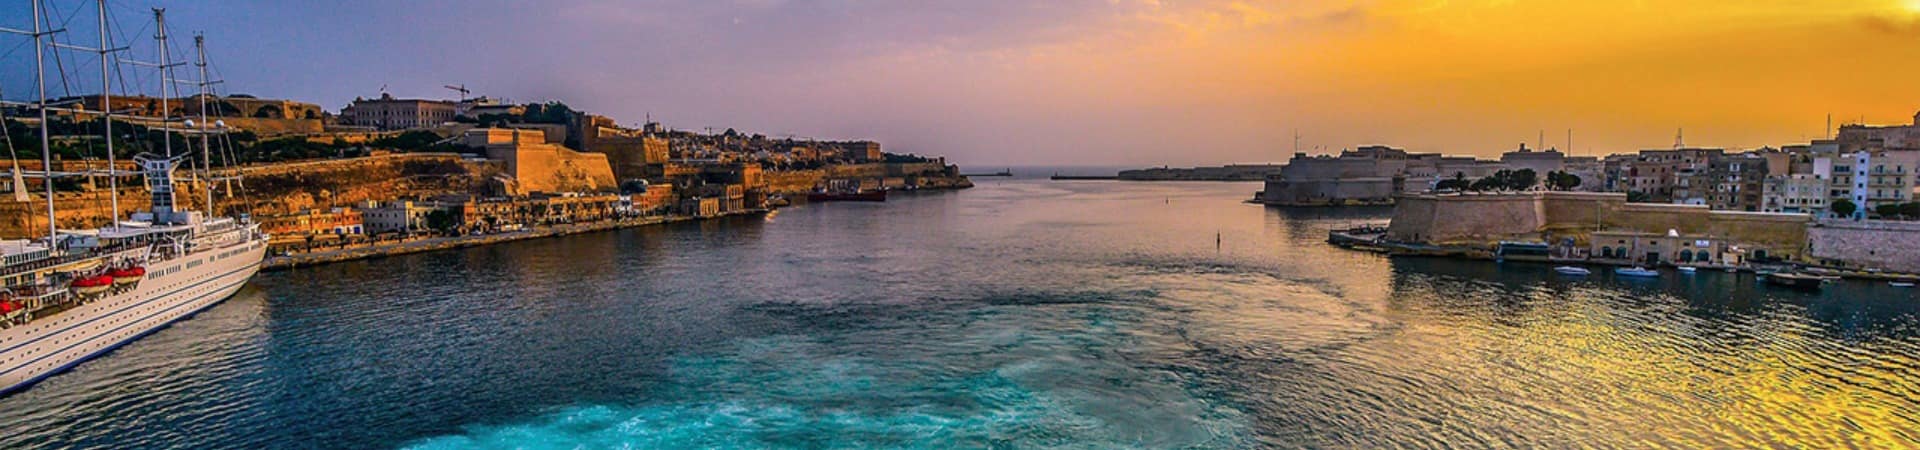 Malta porto